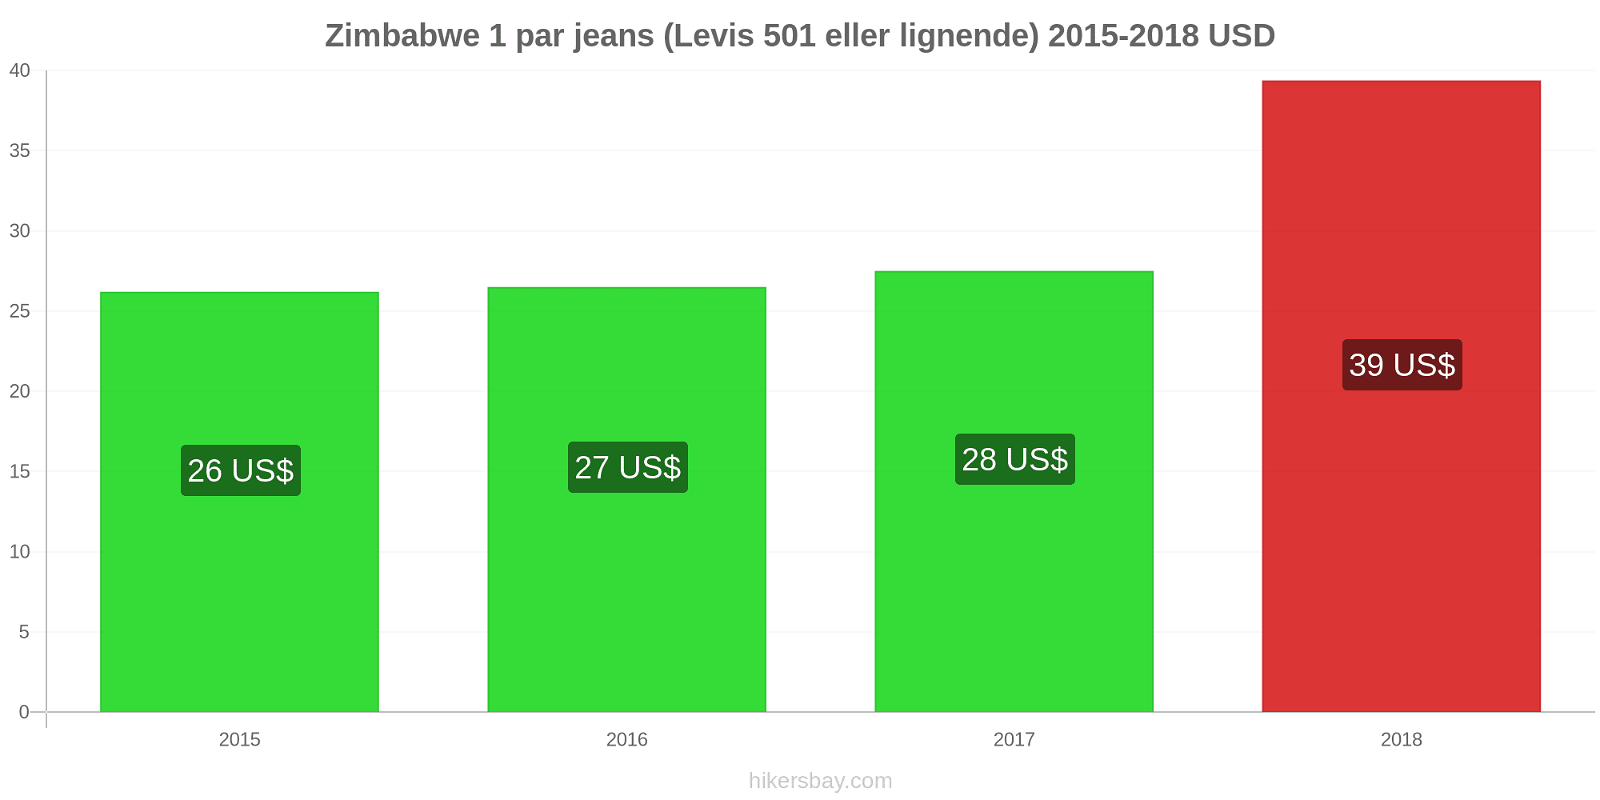 Zimbabwe prisændringer 1 par jeans (Levis 501 eller lignende) hikersbay.com